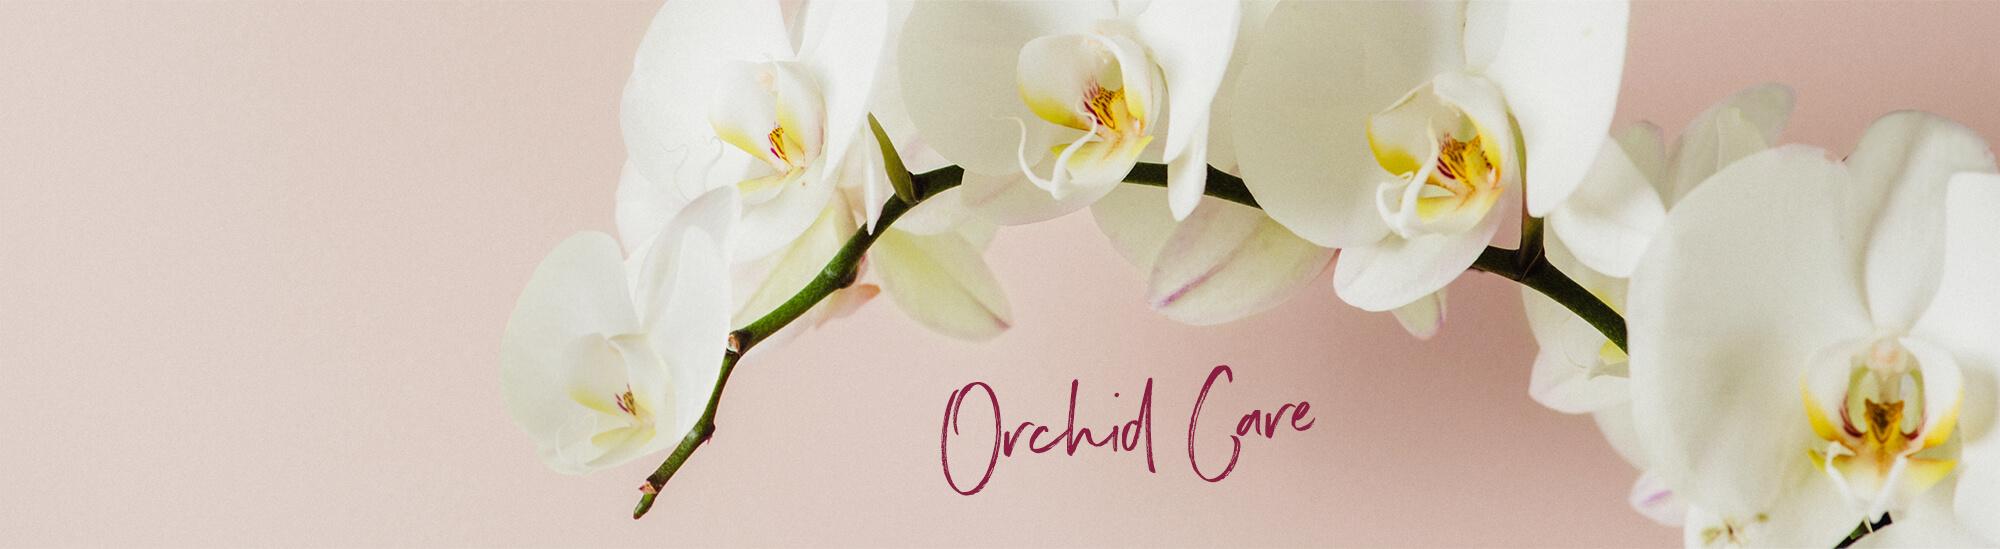 Consejos y trucos para el cuidado de la orquídea